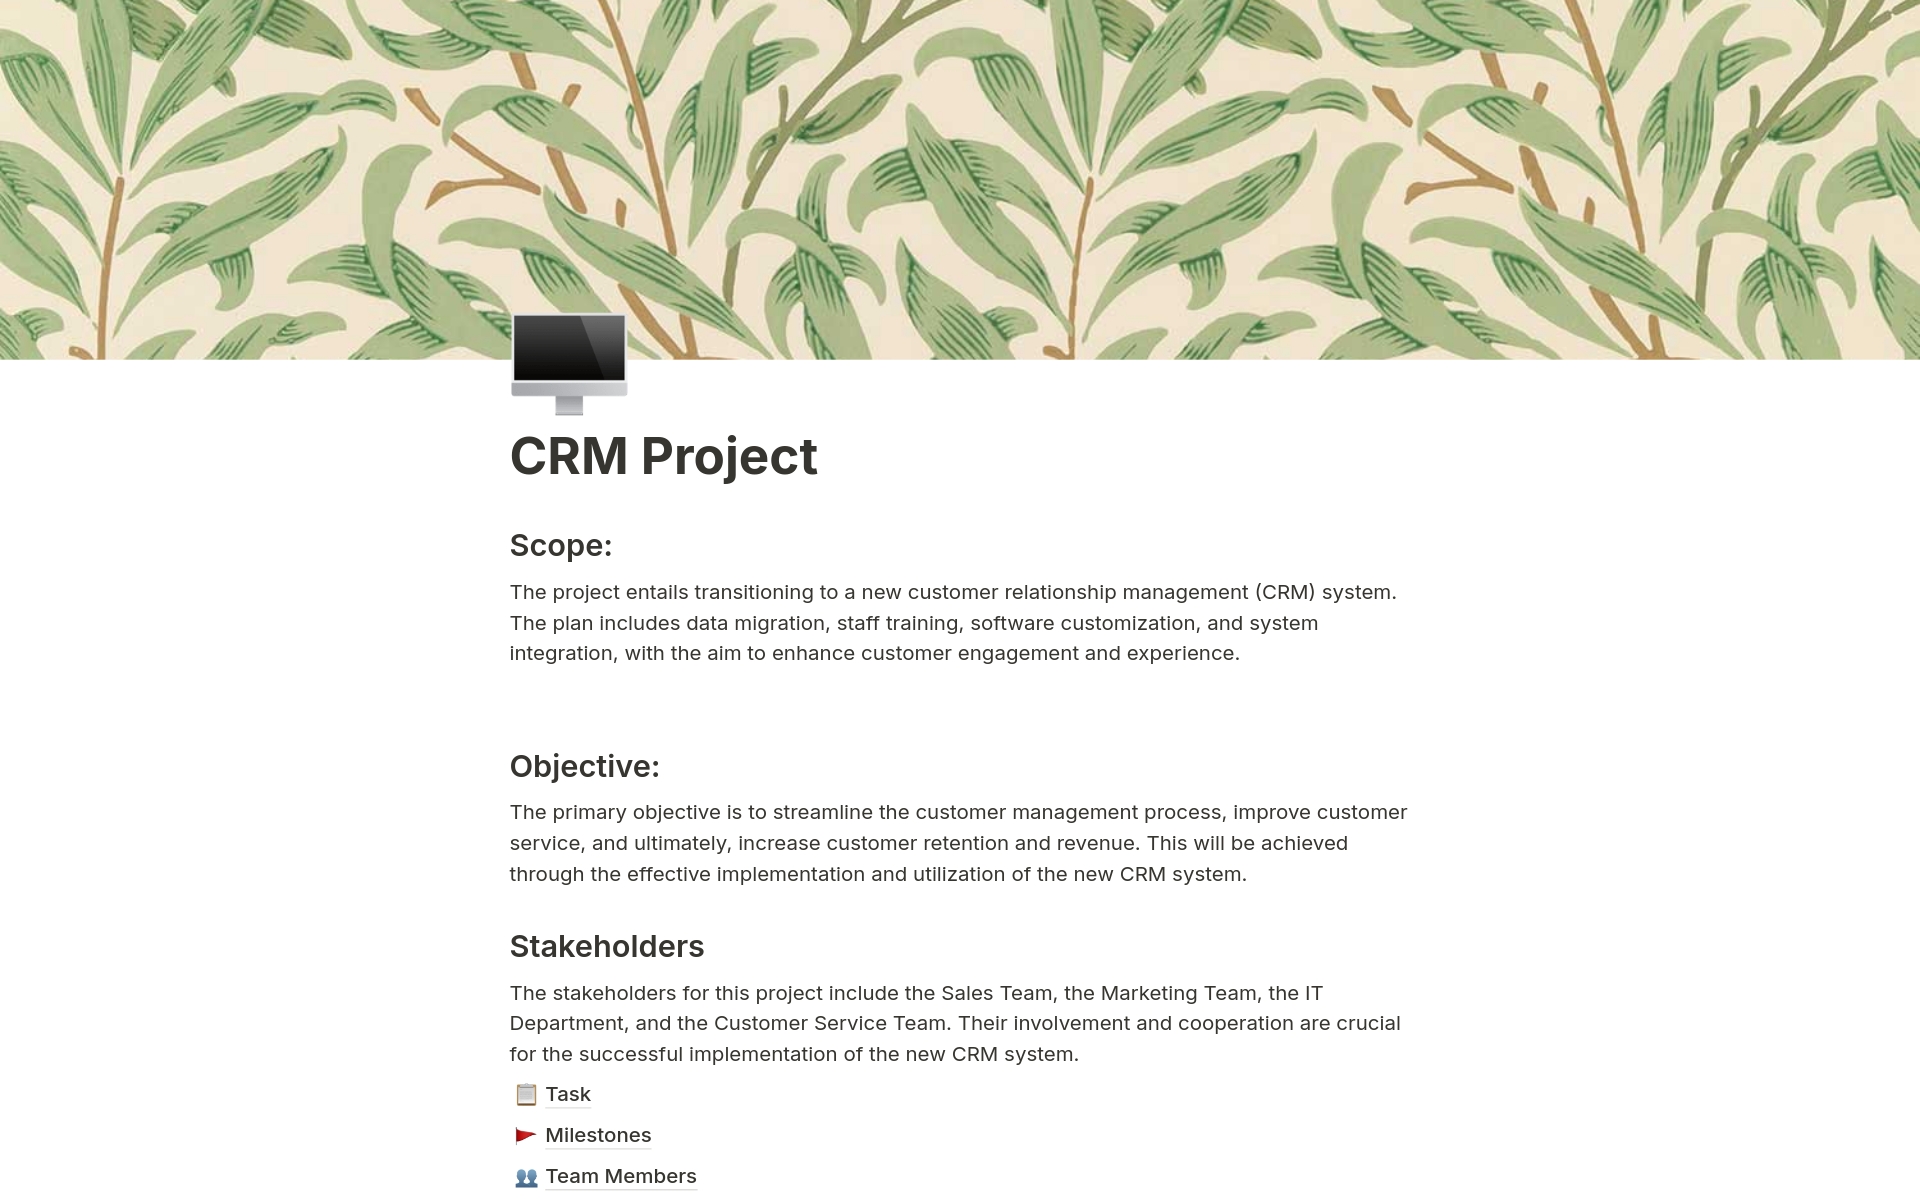 Vista previa de una plantilla para CRM Project Management